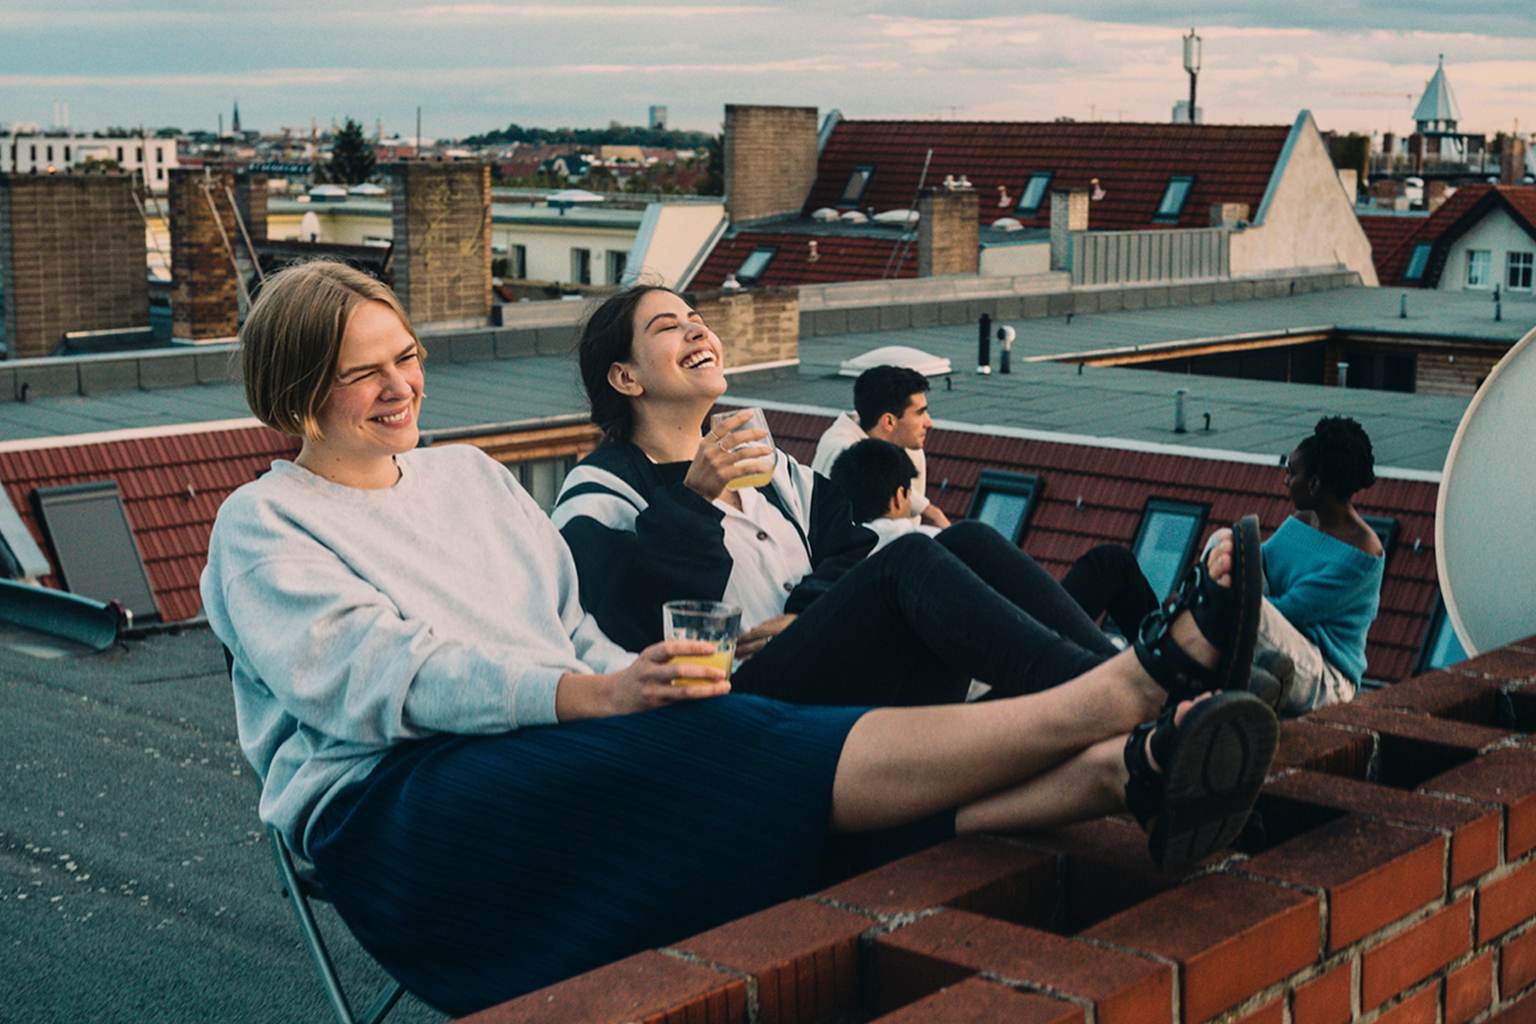 Live in THE LÄND, Zwei Frauen sitzen lachend auf einem Flachdach auf STühlen. Sie halten beide ein Getränk in der Hand. Im Hintergrund sitzen drei weitere Personen auf dem Dach.